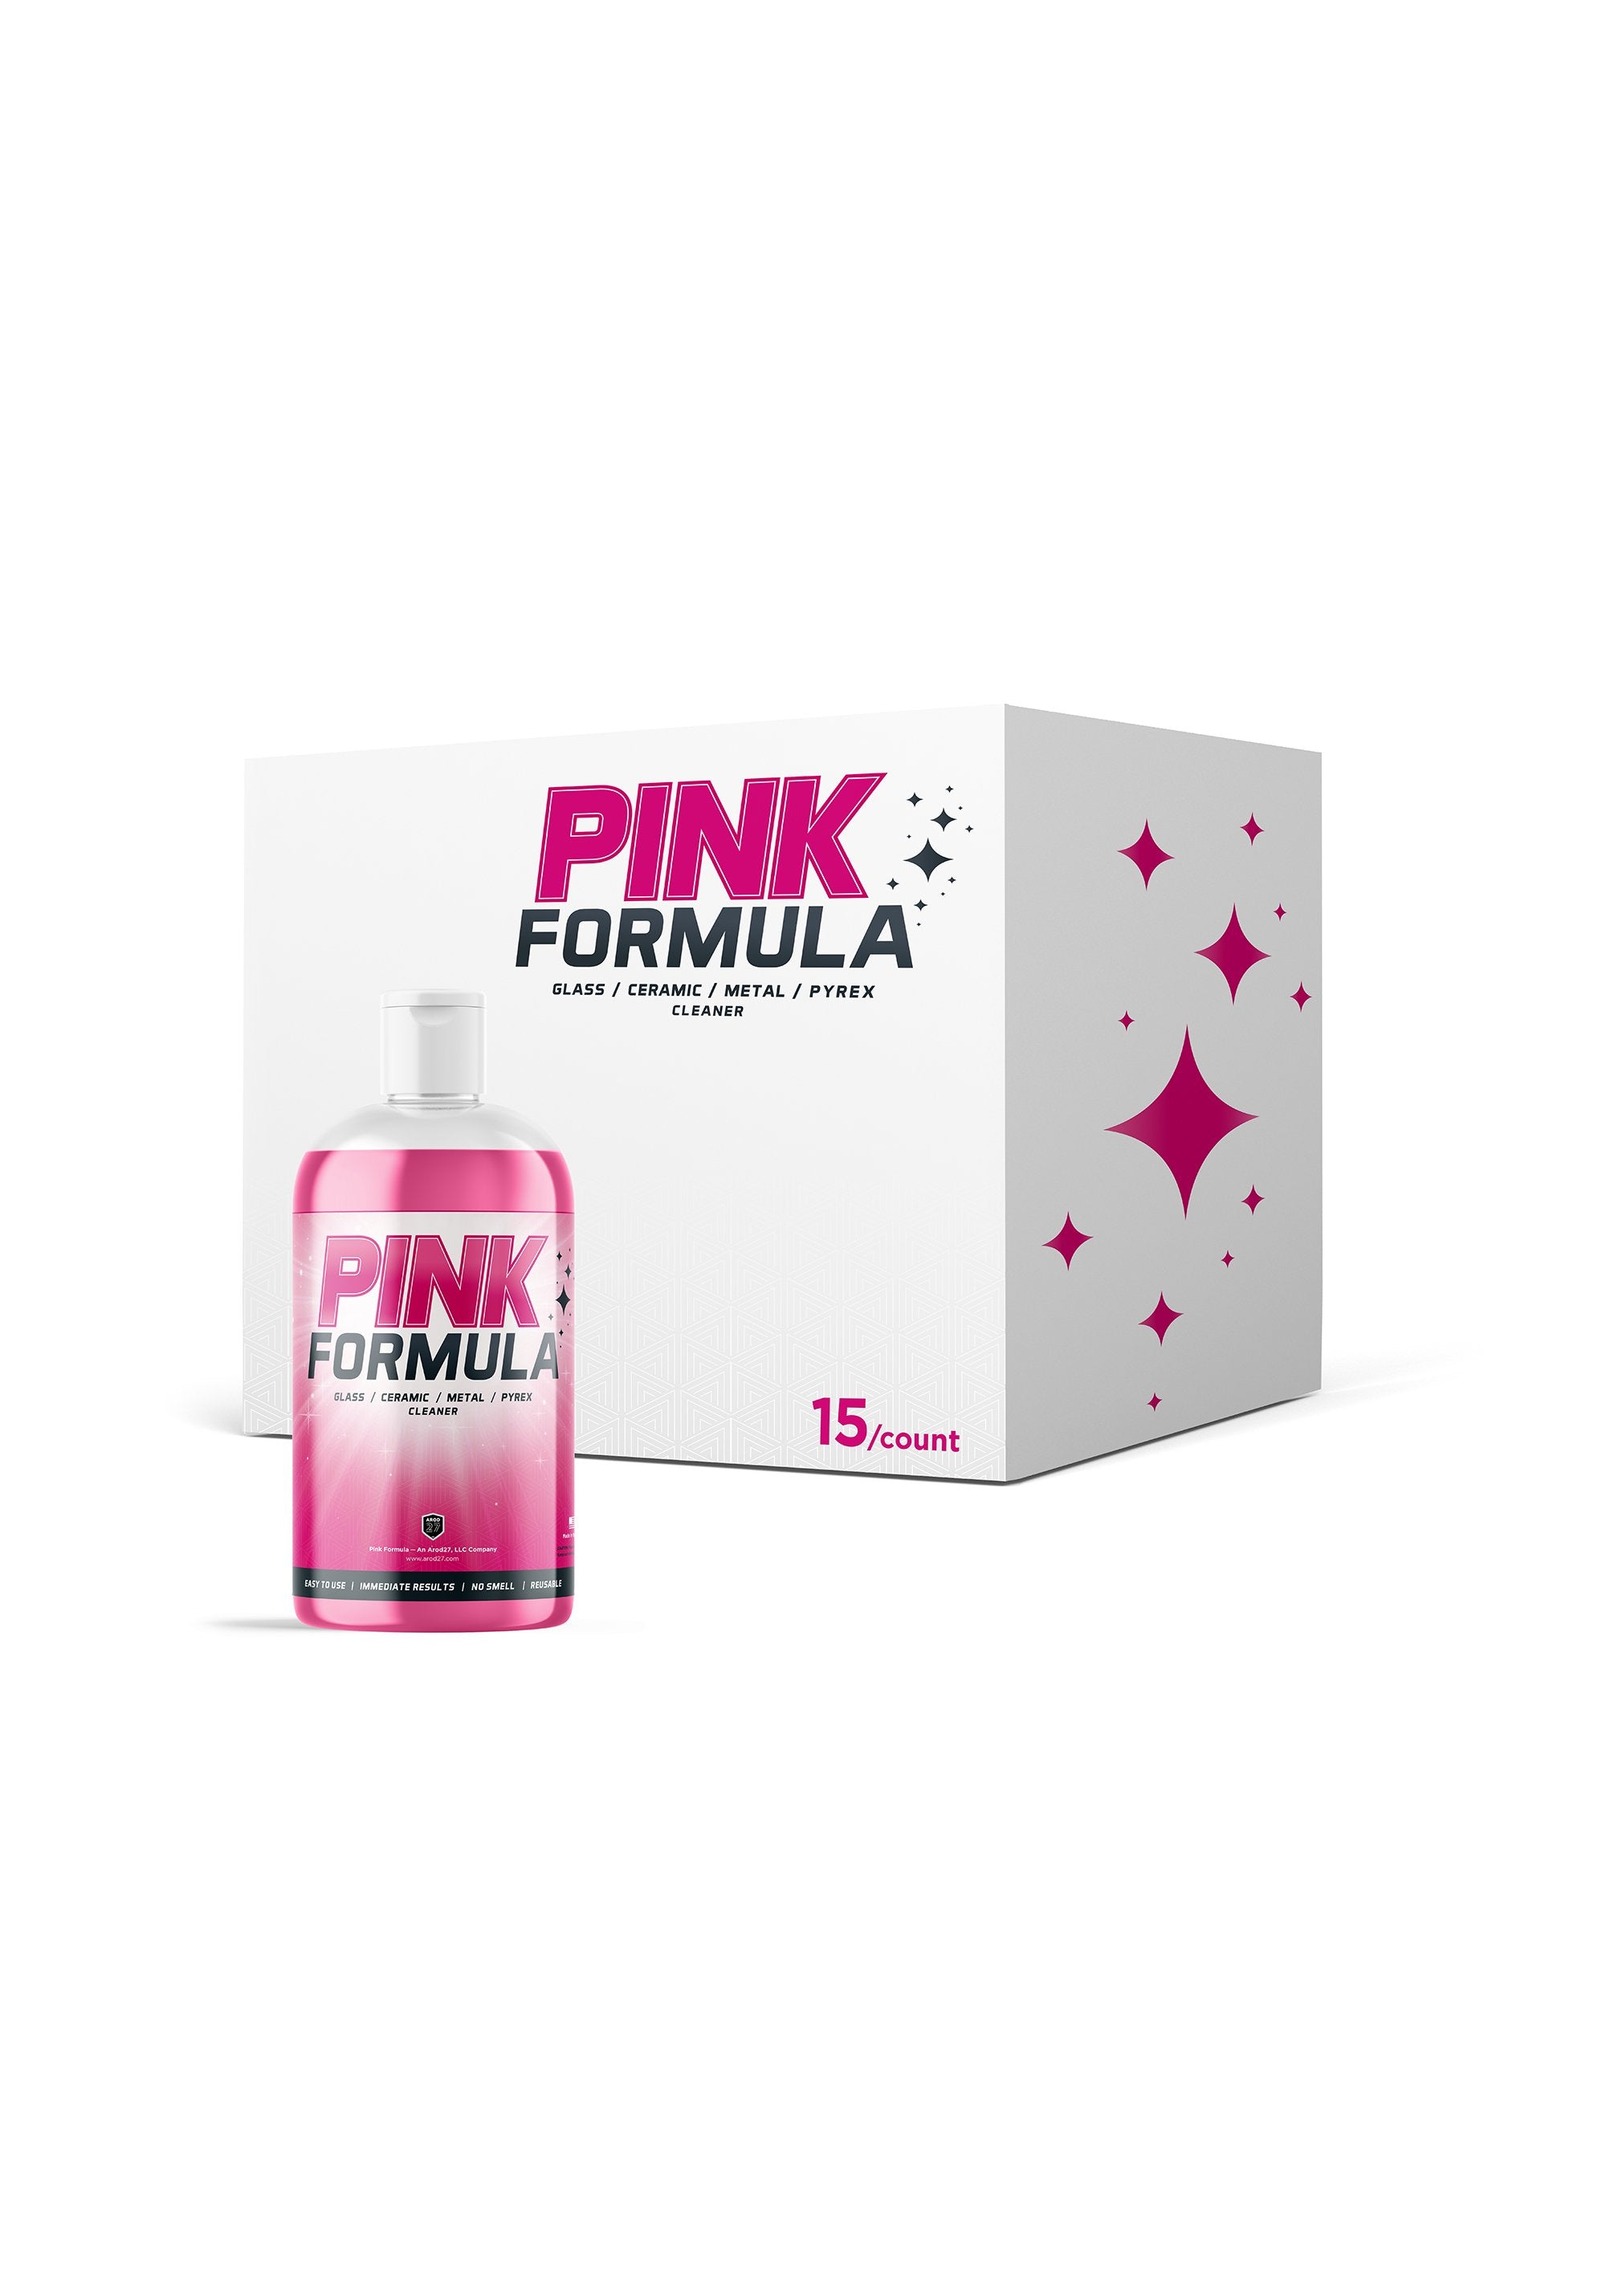 Pink Formula Cleaner Estuche para botellas de 16 oz (15 piezas) - ($10 CON TARIFA DE ENVÍO INTEGRADA INCLUIDA) 